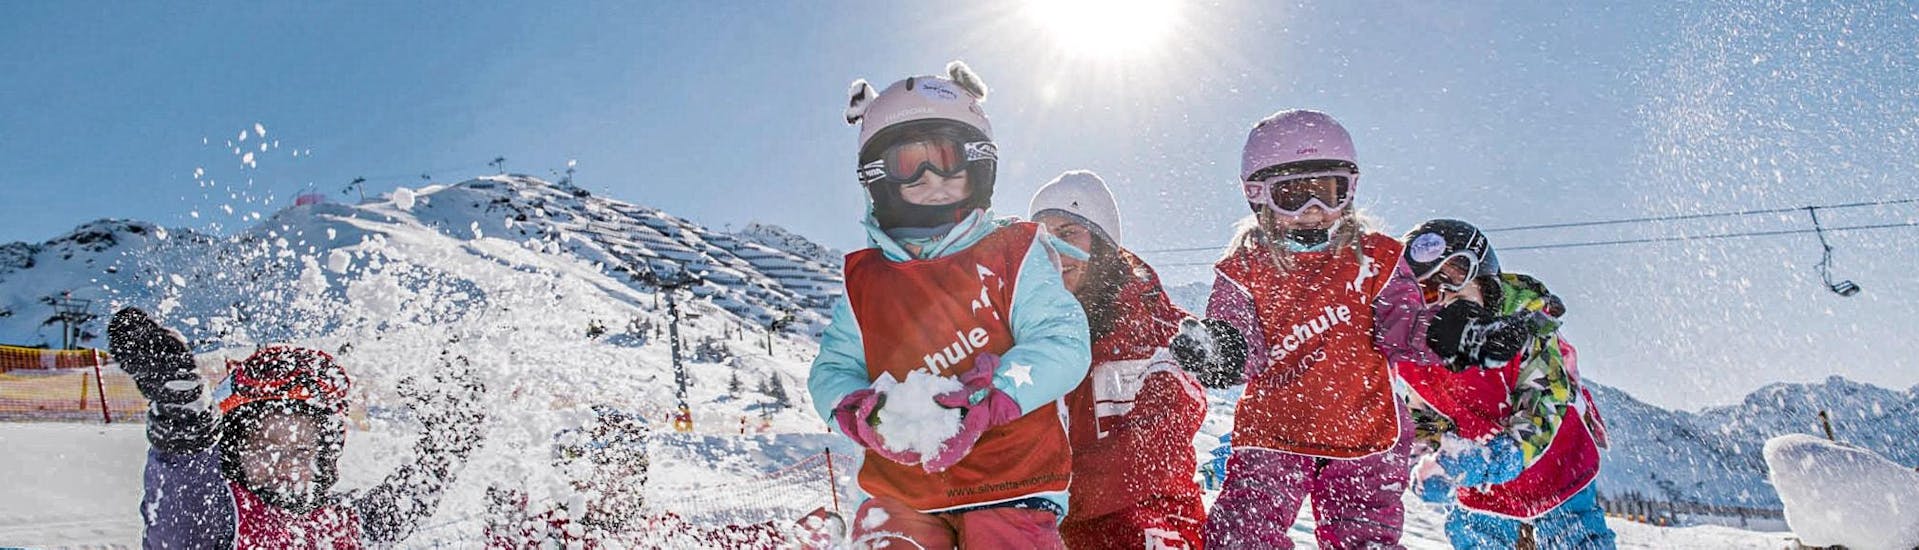 Een groep jonge kinderen vermaakt zich tijdens een sneeuwballengevecht tijdens hun kinderskilessen Bambini (3-5 jaar) voor beginners met Skischule Schruns.